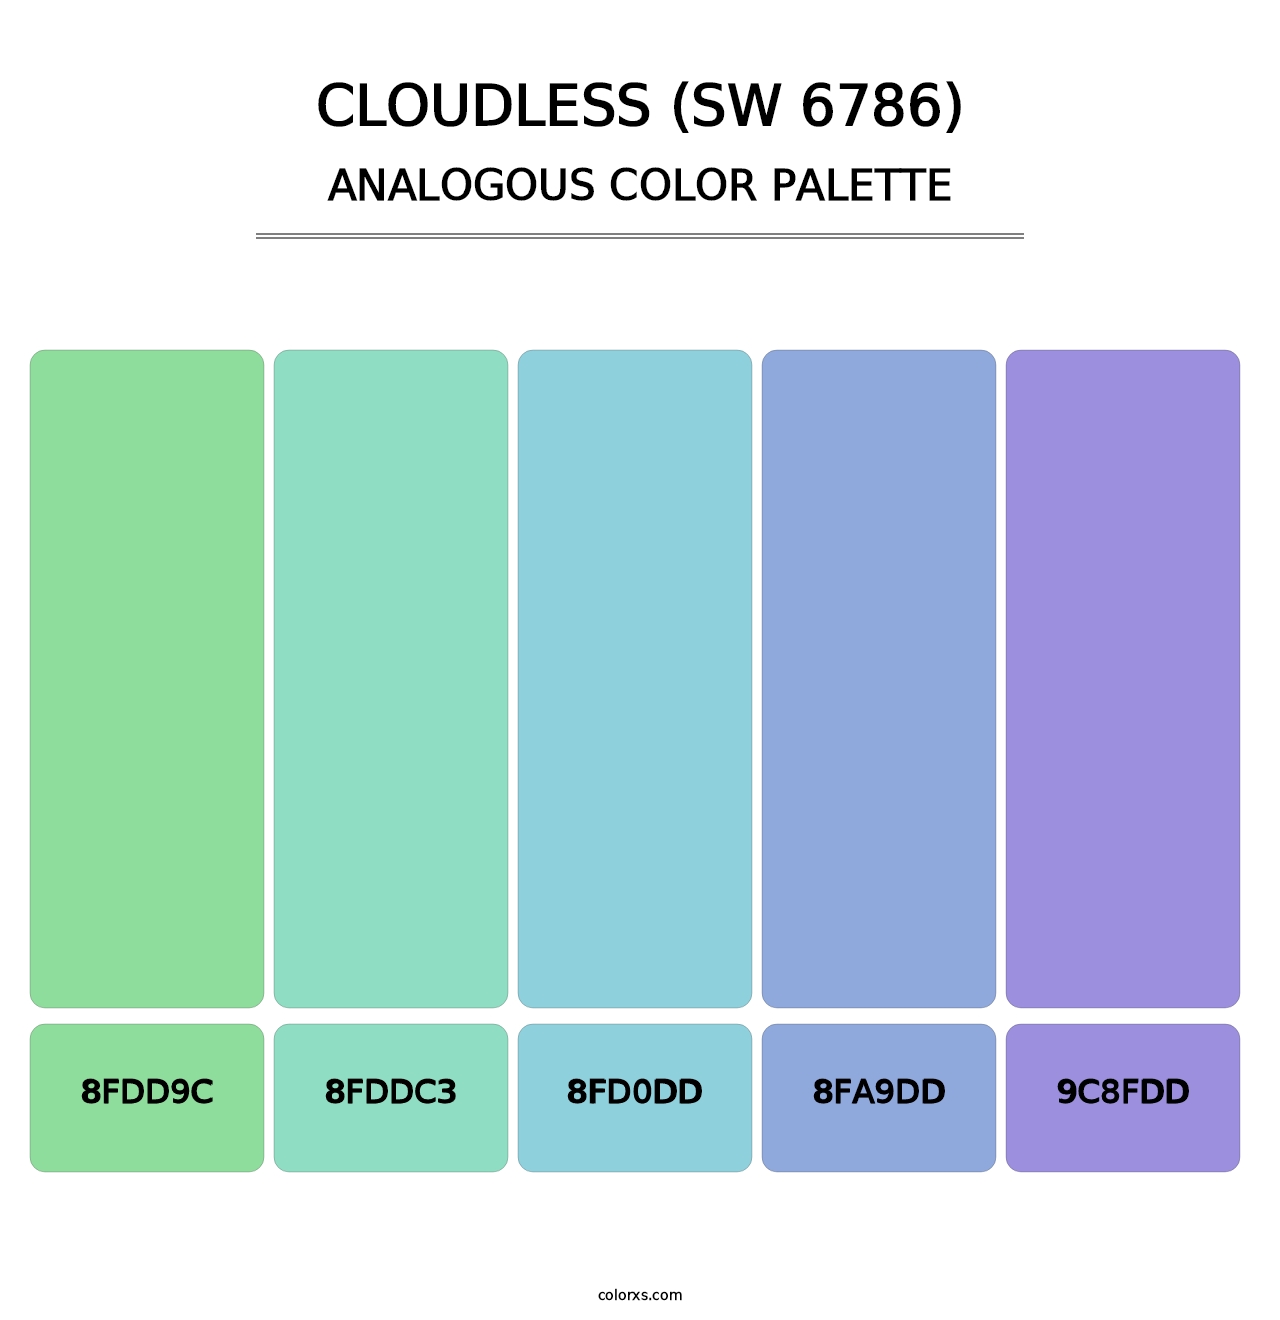 Cloudless (SW 6786) - Analogous Color Palette